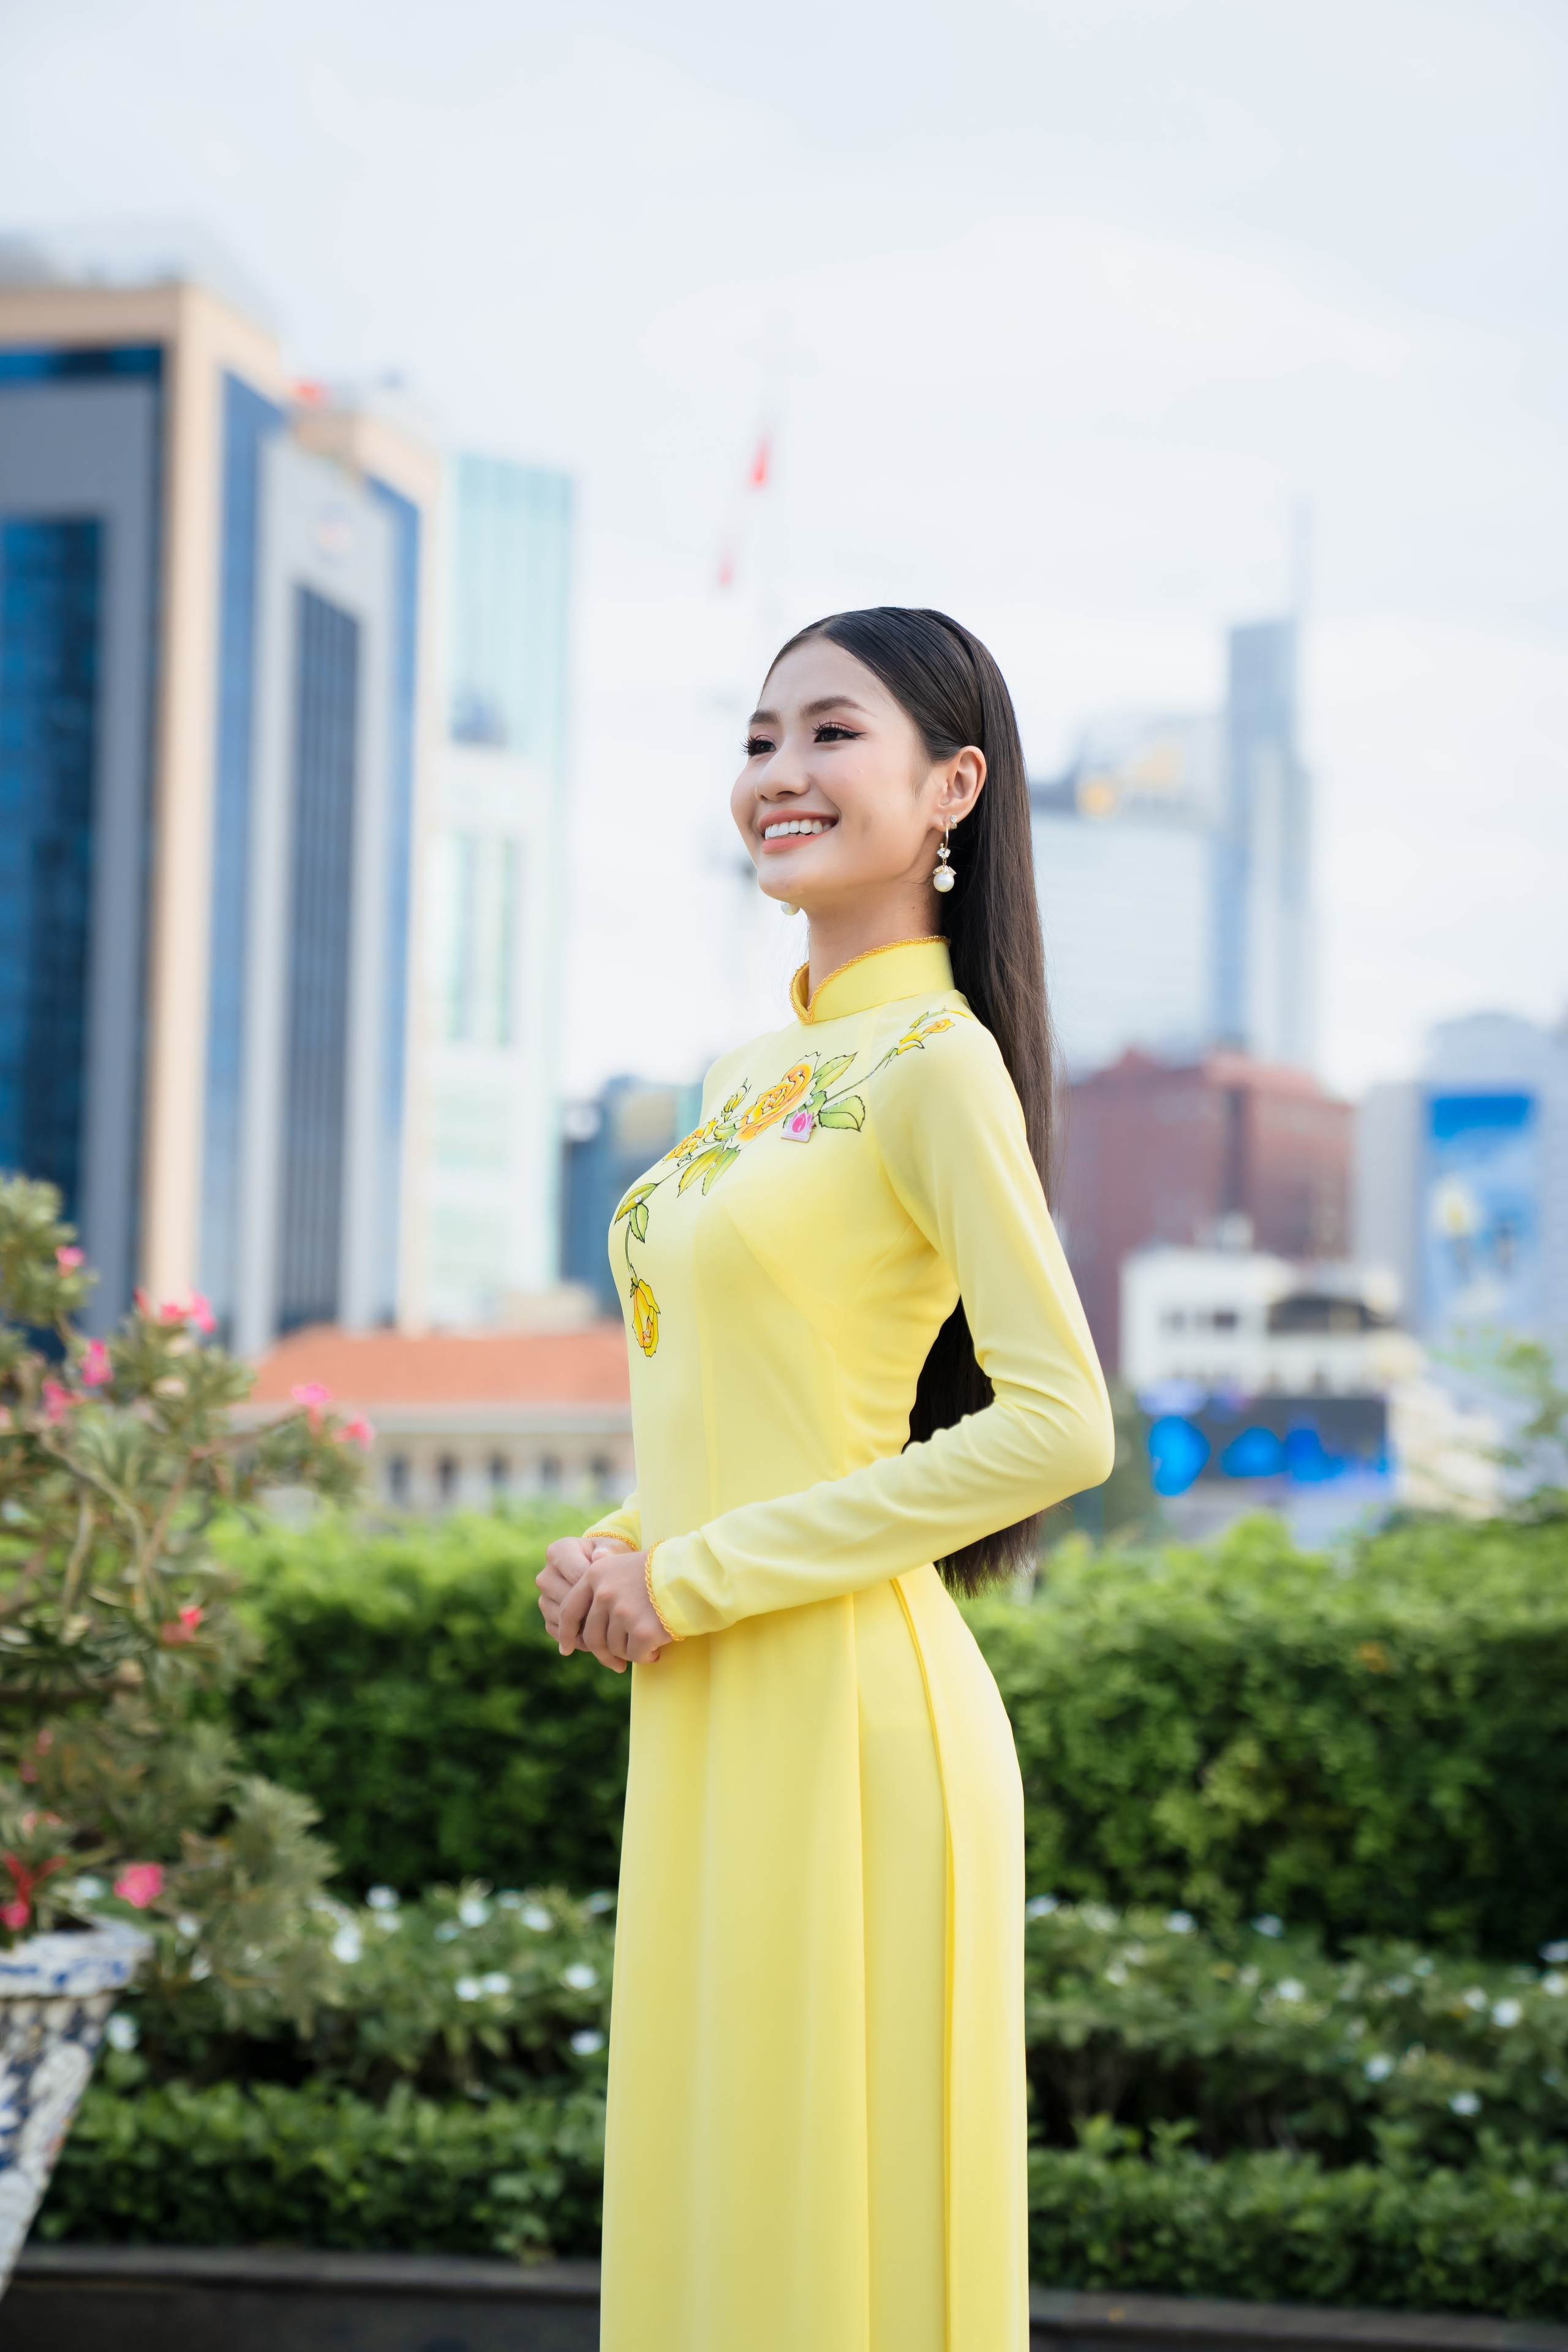 Hoa hậu Môi trường Thế giới Nguyễn Thanh Hà: “Người của công chúng nên tránh lan truyền kiến thức sai lệch”- Ảnh 3.